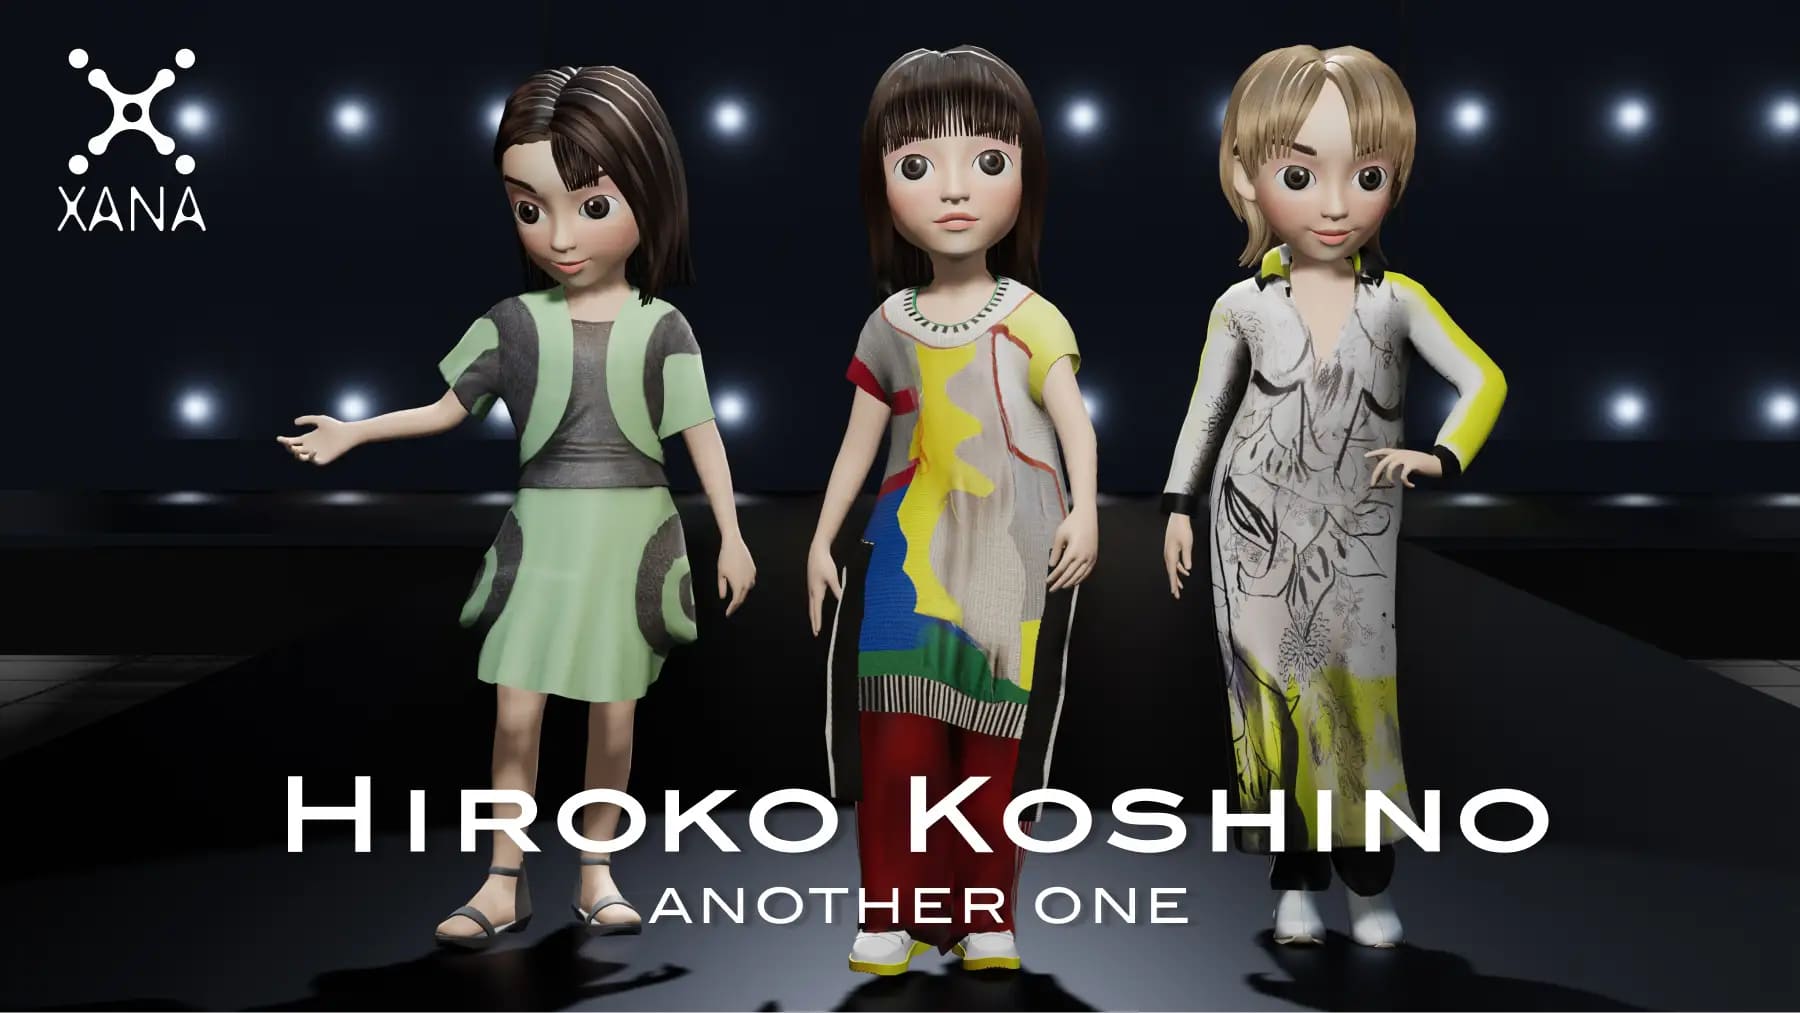 koshino hiroko